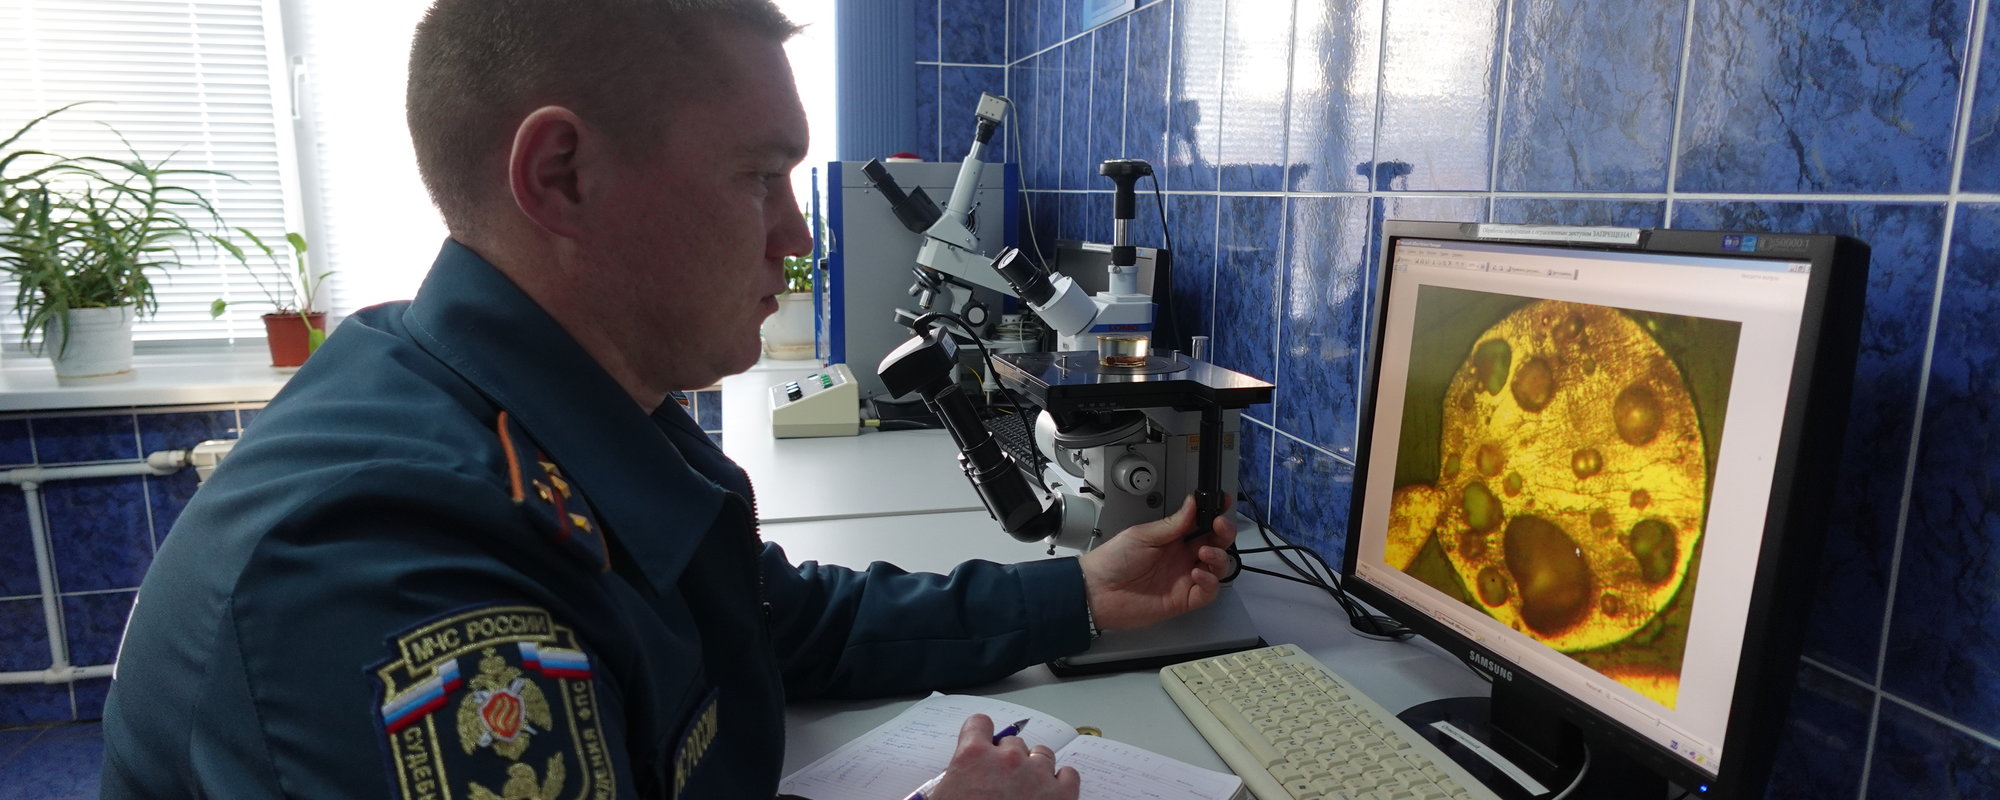 Микроскоп стереоскопический МСП-1